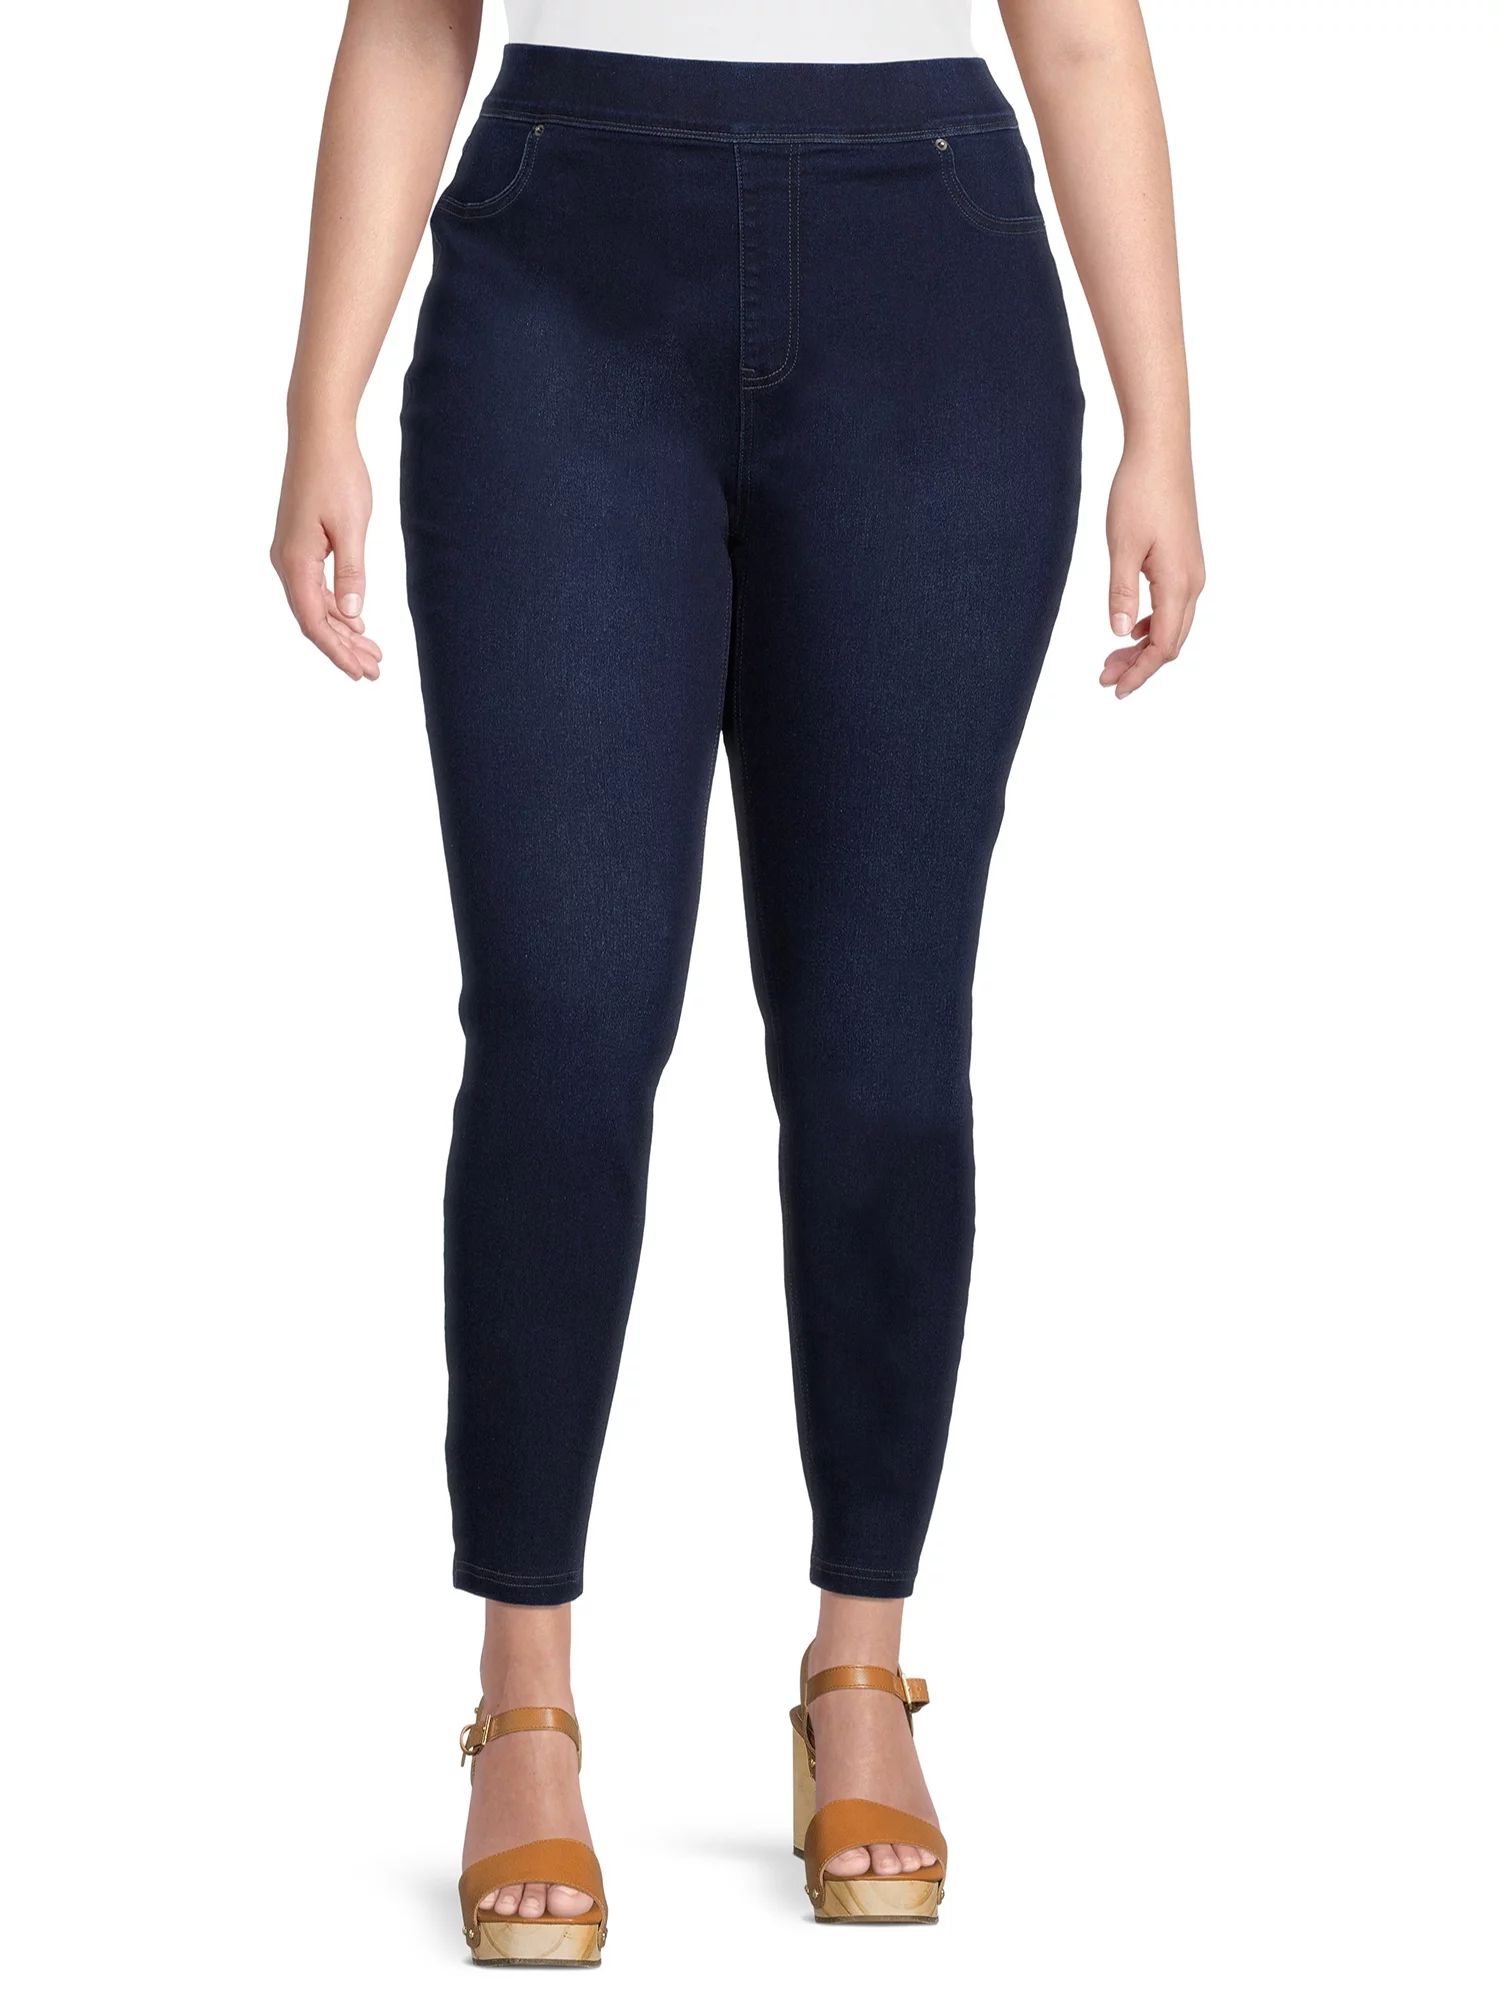 Terra & Sky Women's Plus Size Jegging Jeans, 28" Inseam | Walmart (US)